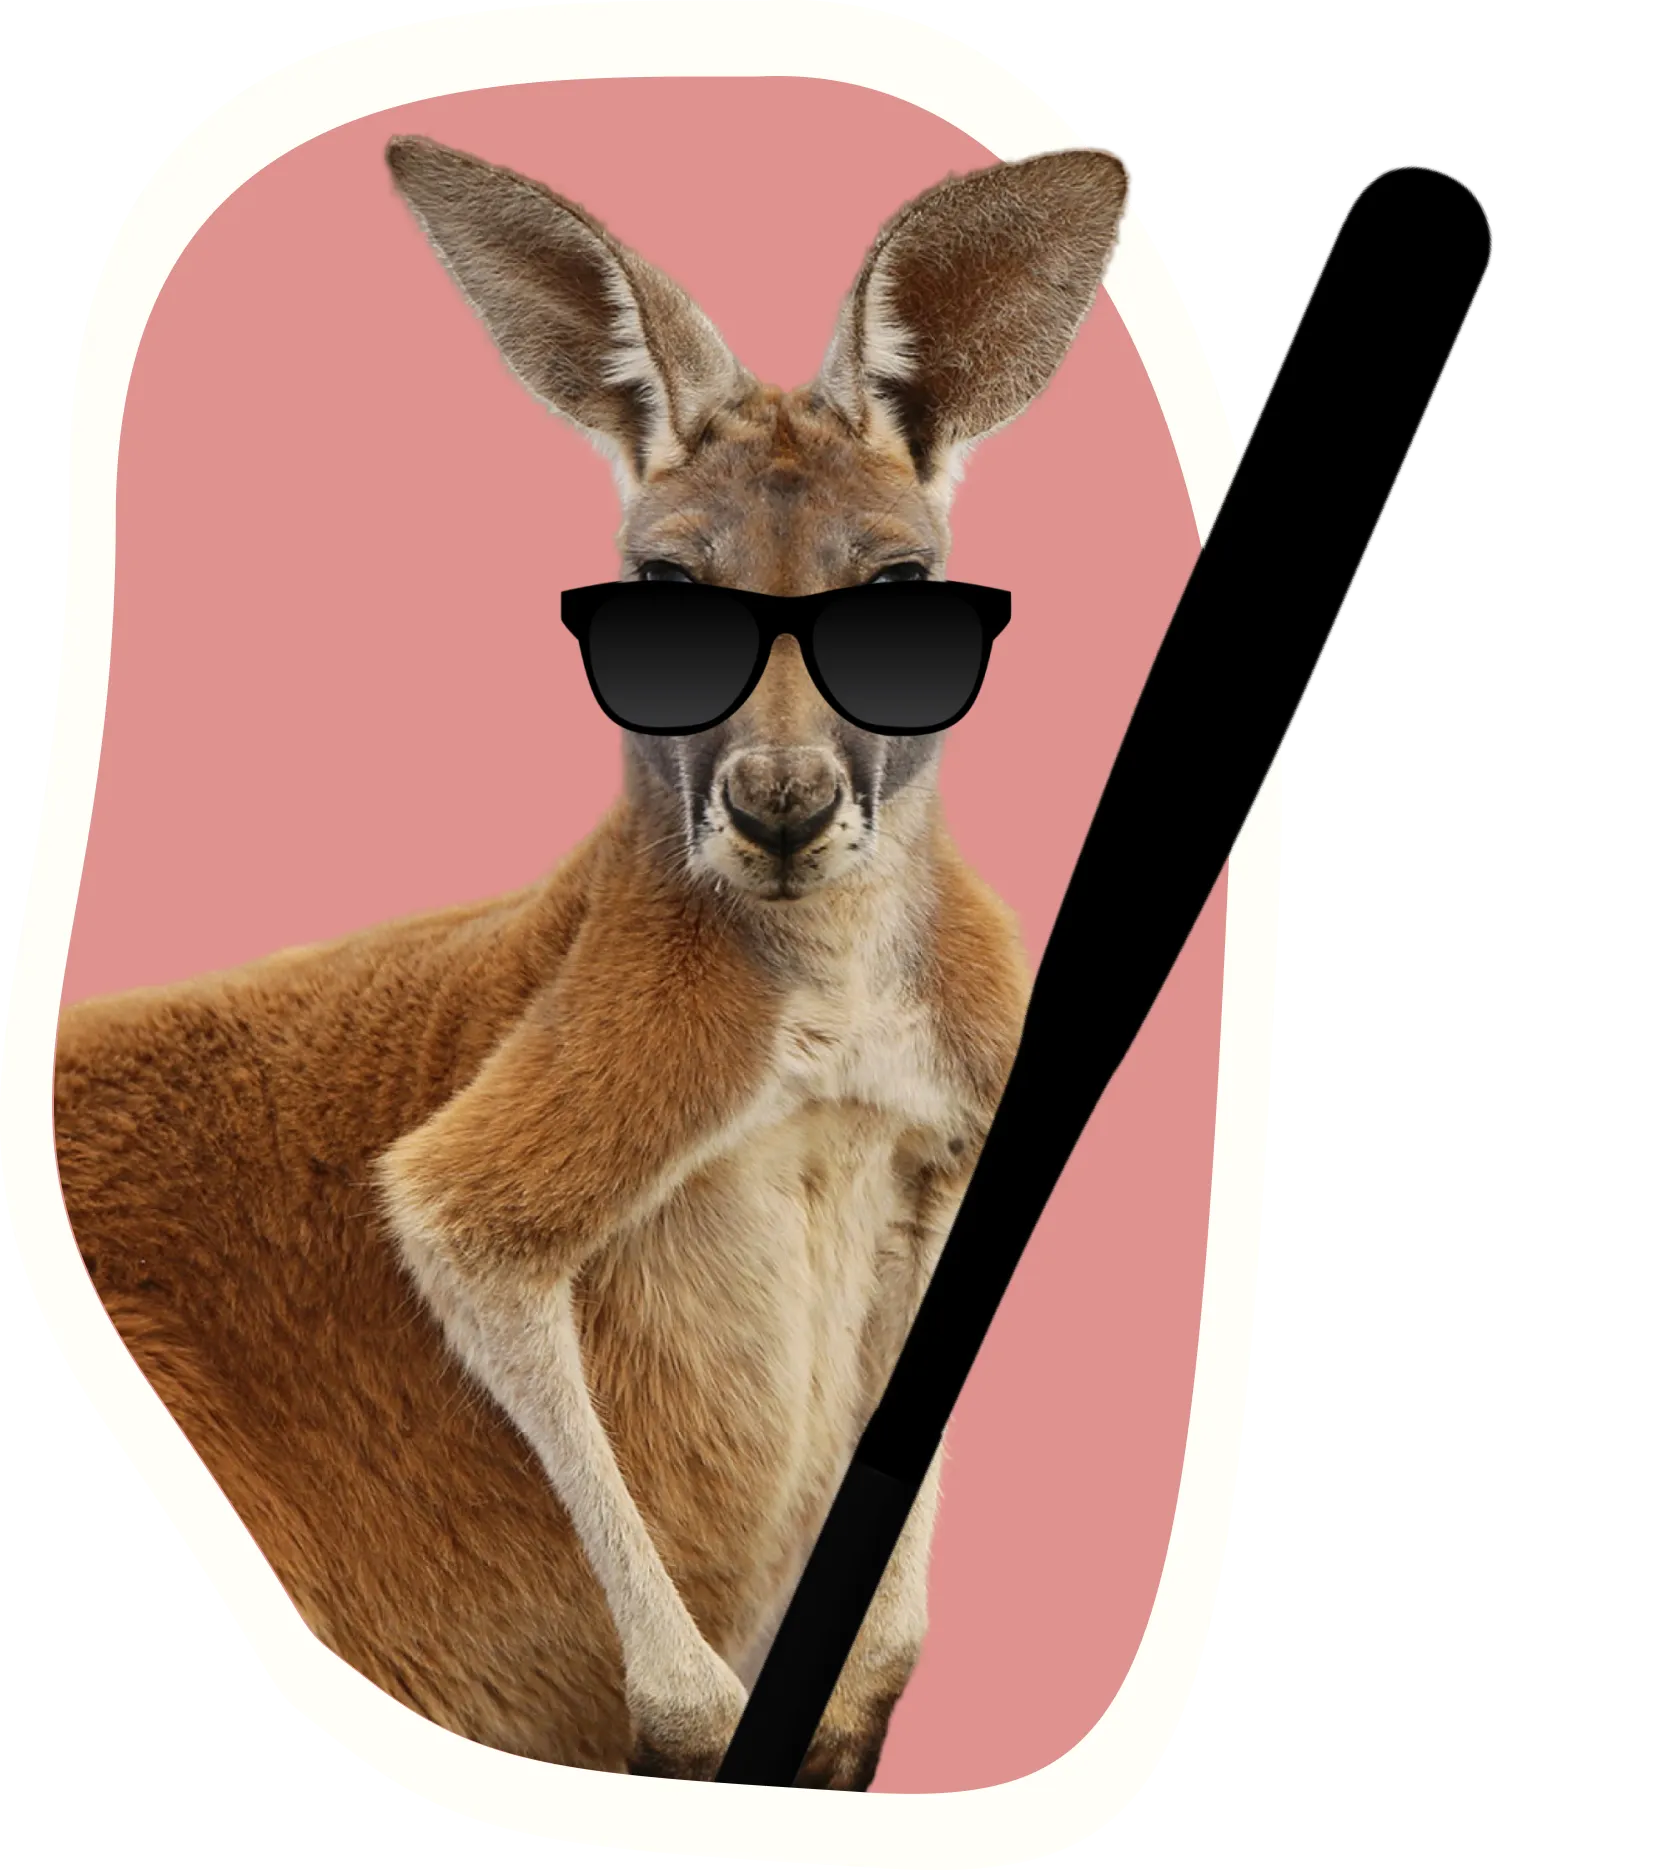 A kangaroo with a bat